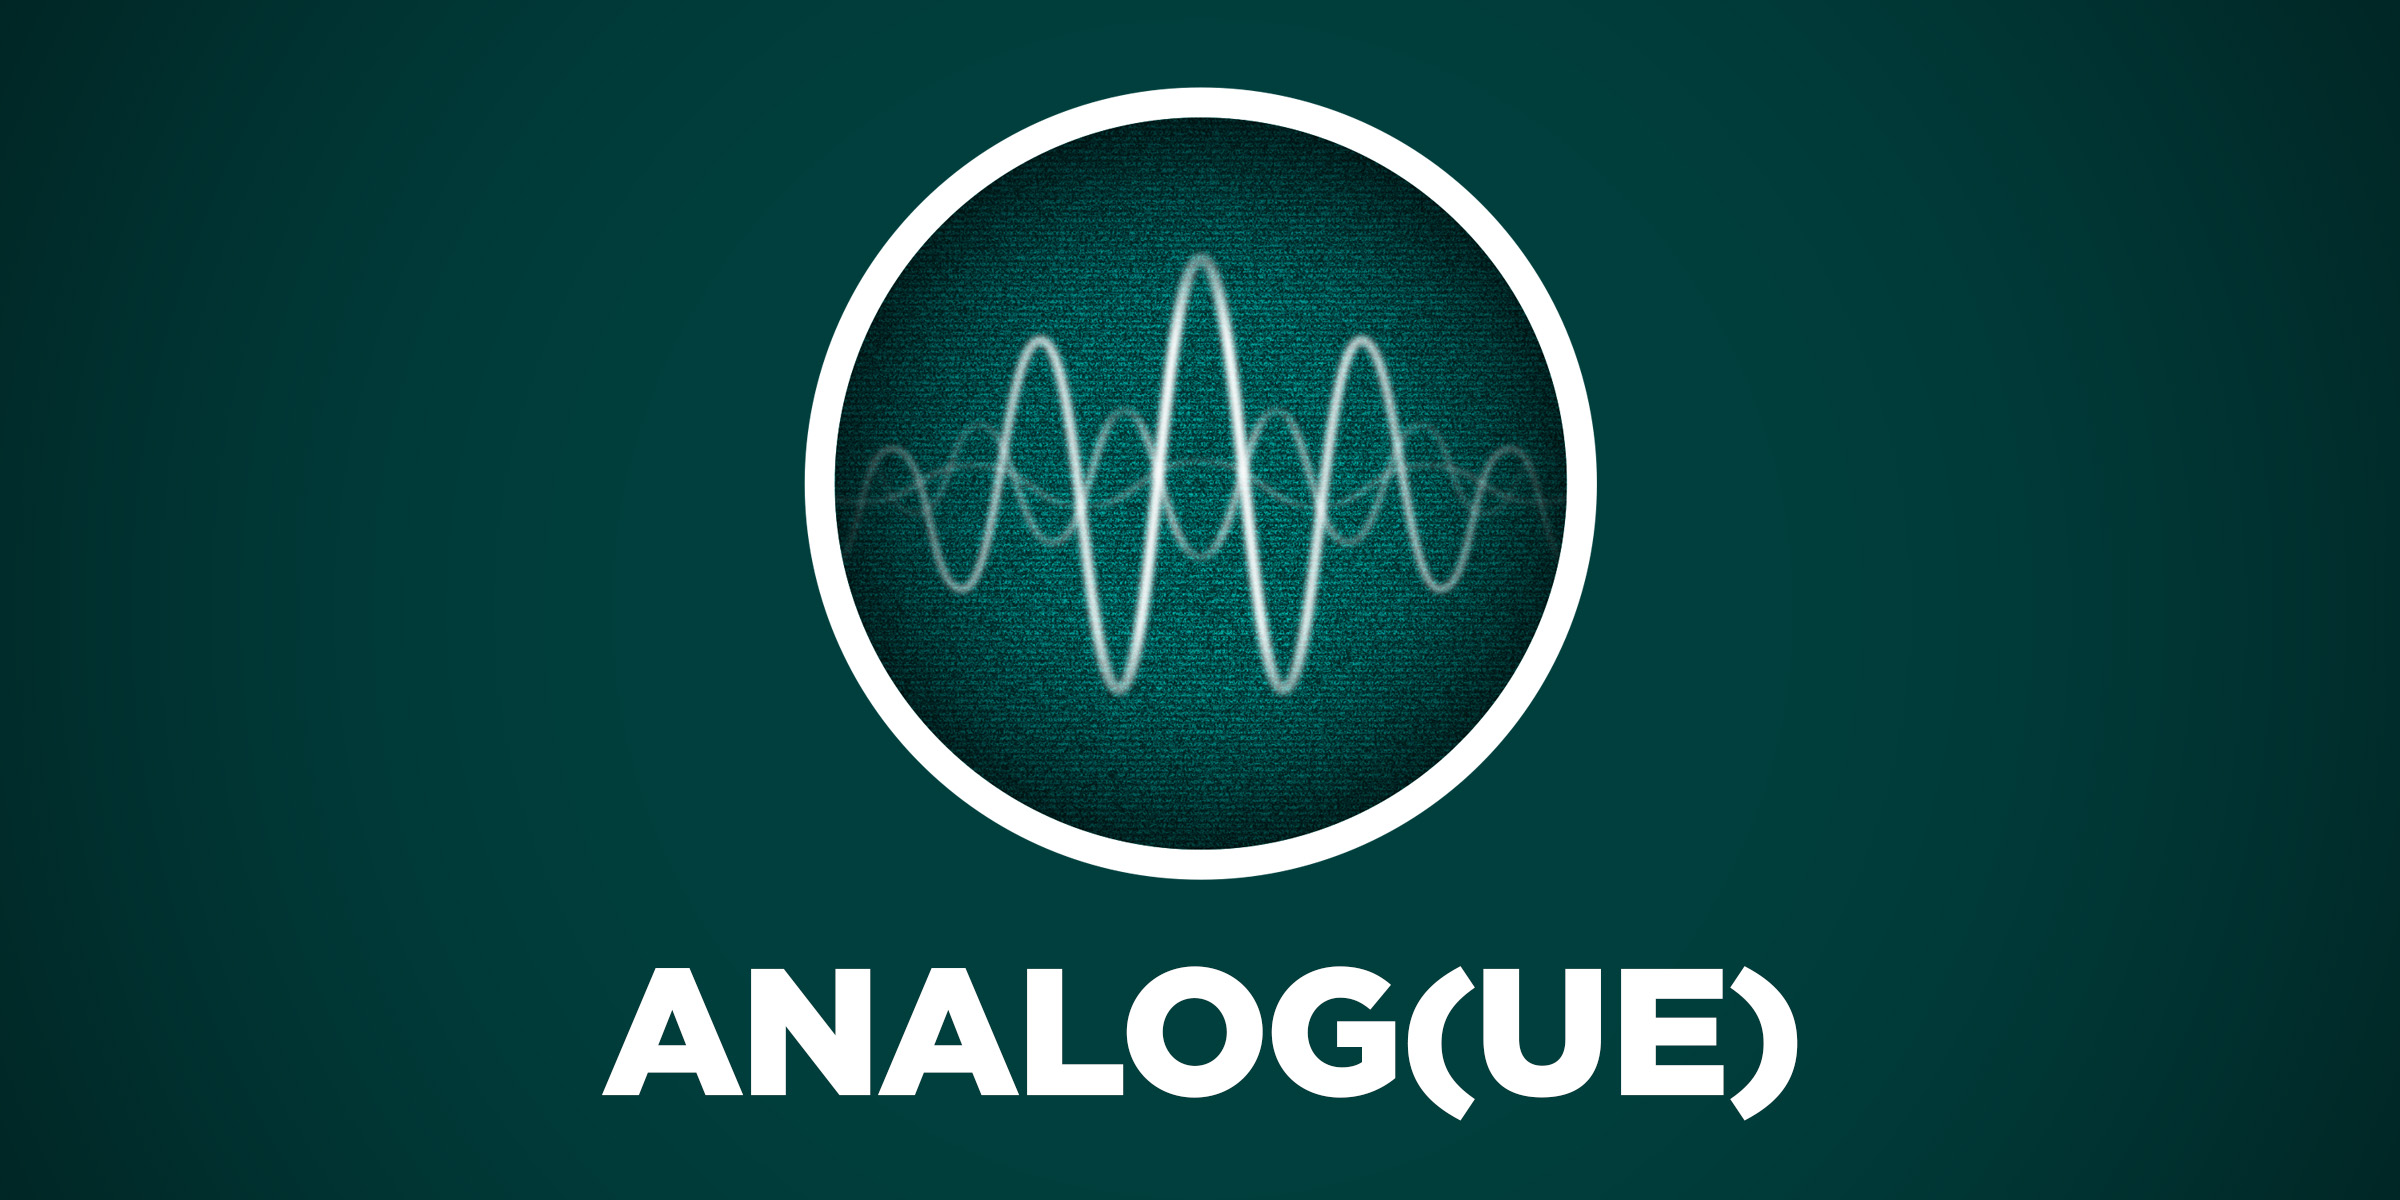 Analog(ue) #187: Slow Content – Relay FM